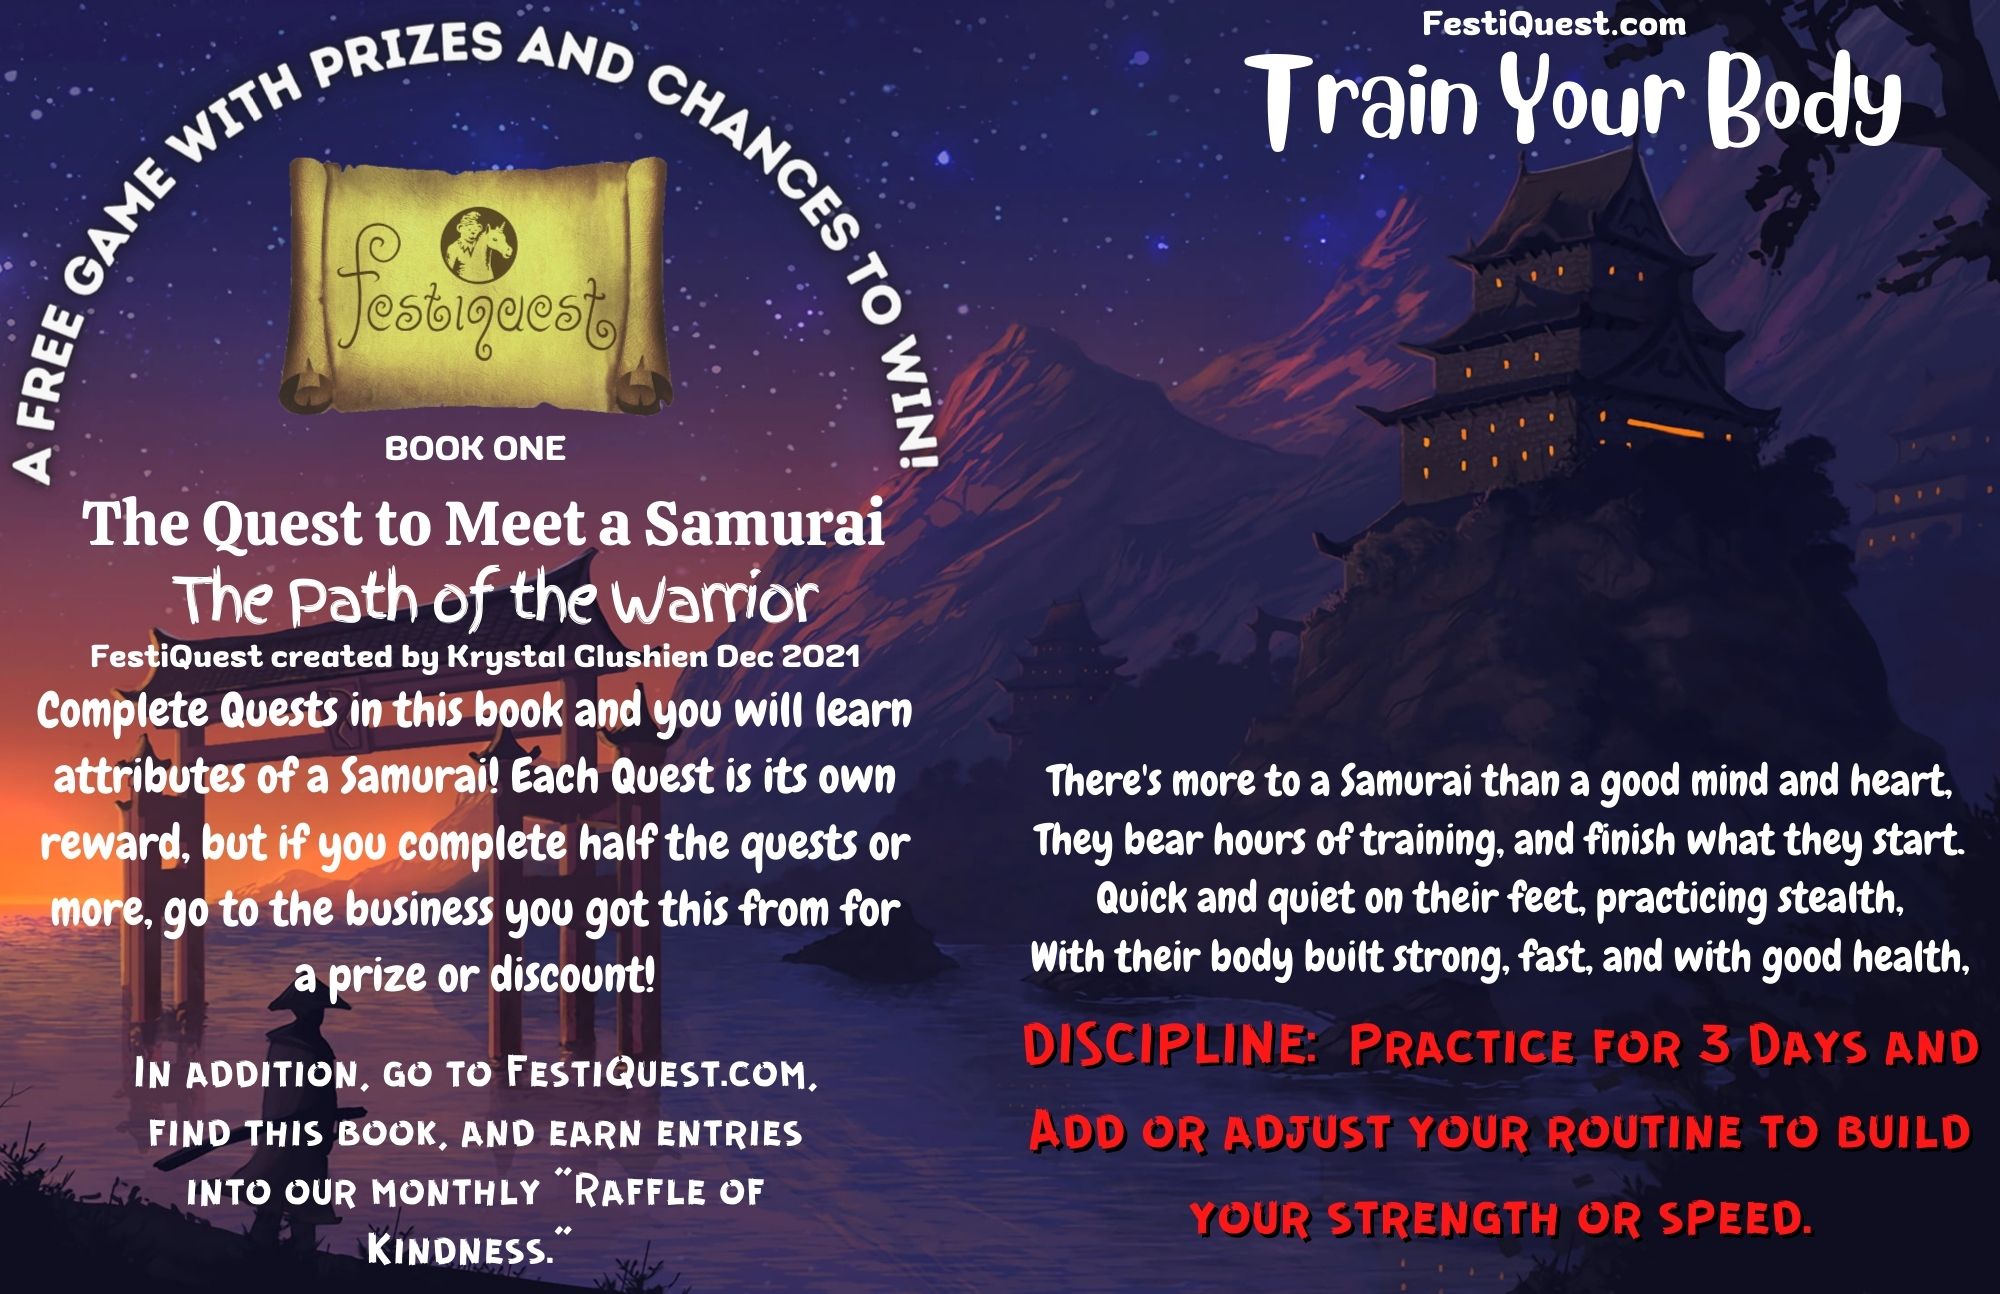 The Quest to Meet a Samurai (1)